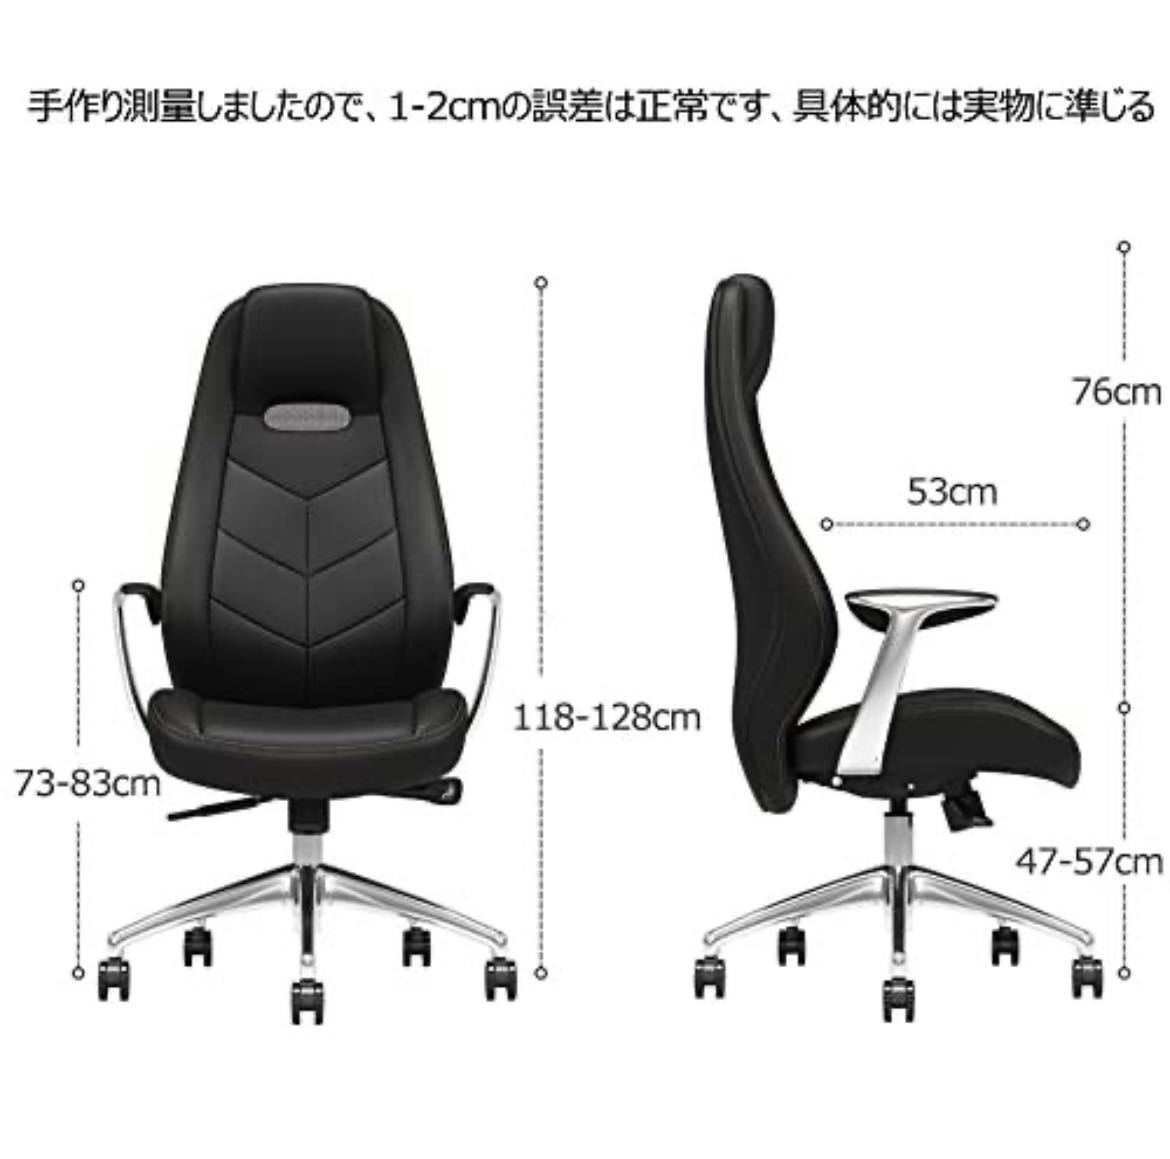  бесплатная доставка![ роскошный ] супер популярный! офисная работа для стул для бытового использования офис стул удобный кожа стул фирма длина стул бизнес .. соус стул 